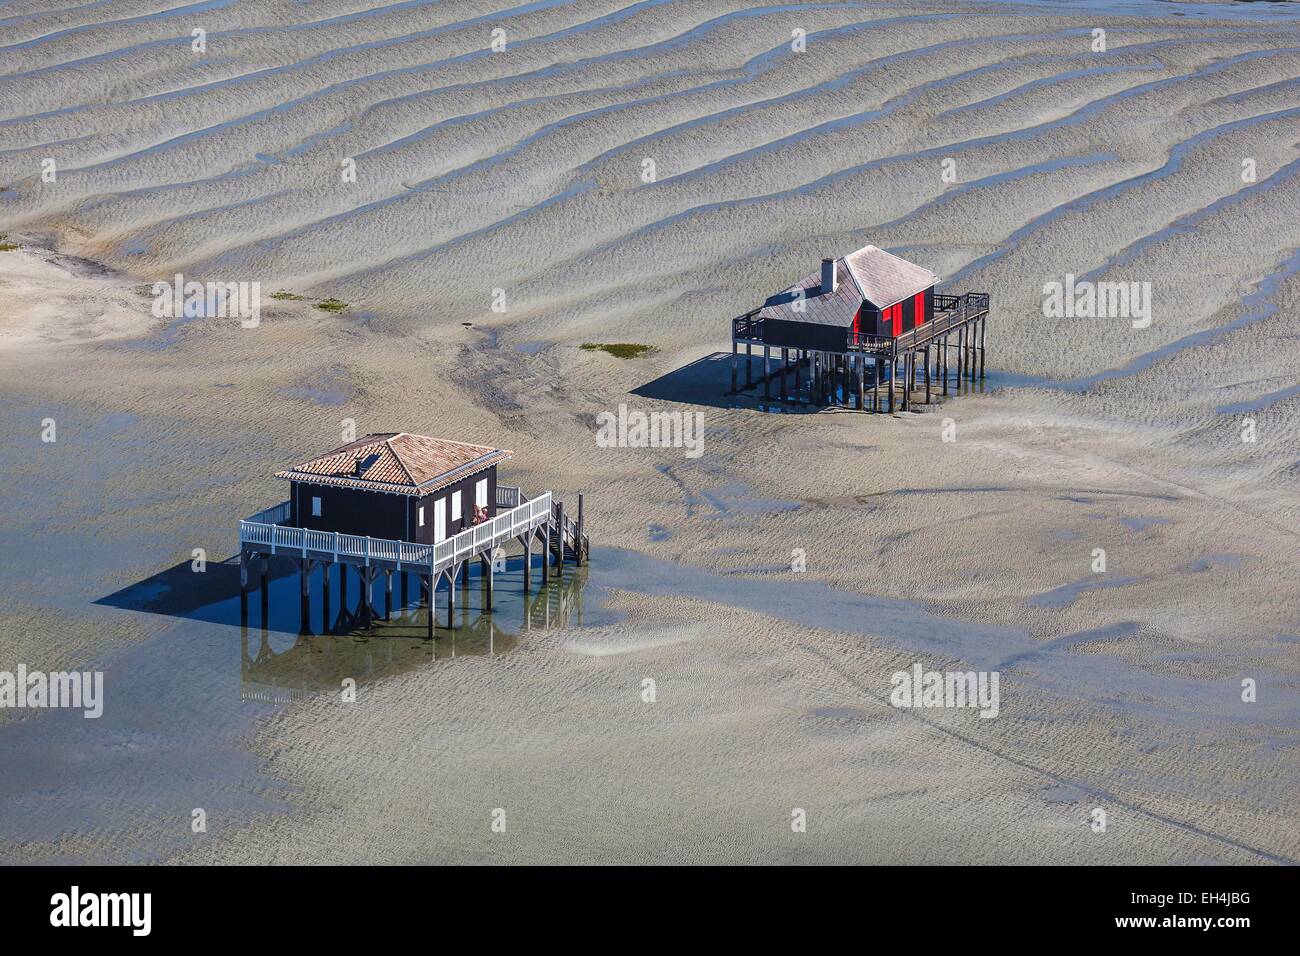 France, Gironde, Arcachon, les maisons en bois sur pilotis près de l'IIe aux Oiseaux (vue aérienne)) Banque D'Images